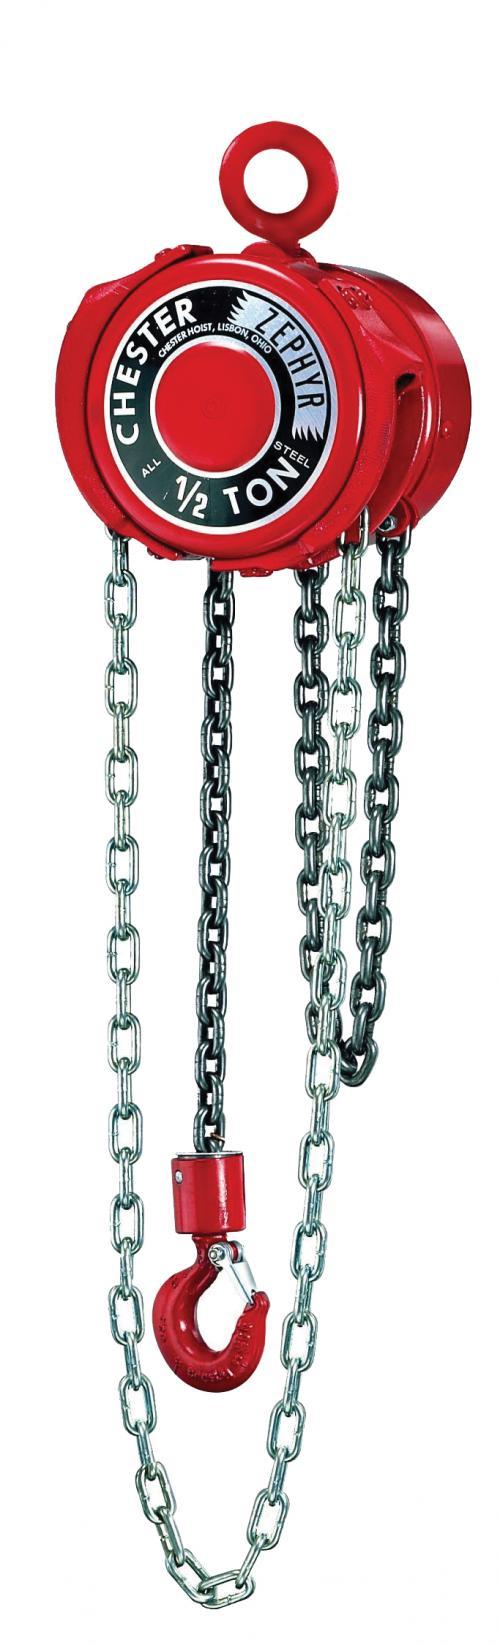 25 Ton Chester Zephyr | Manual Chain Hoist | Uescocranes.com